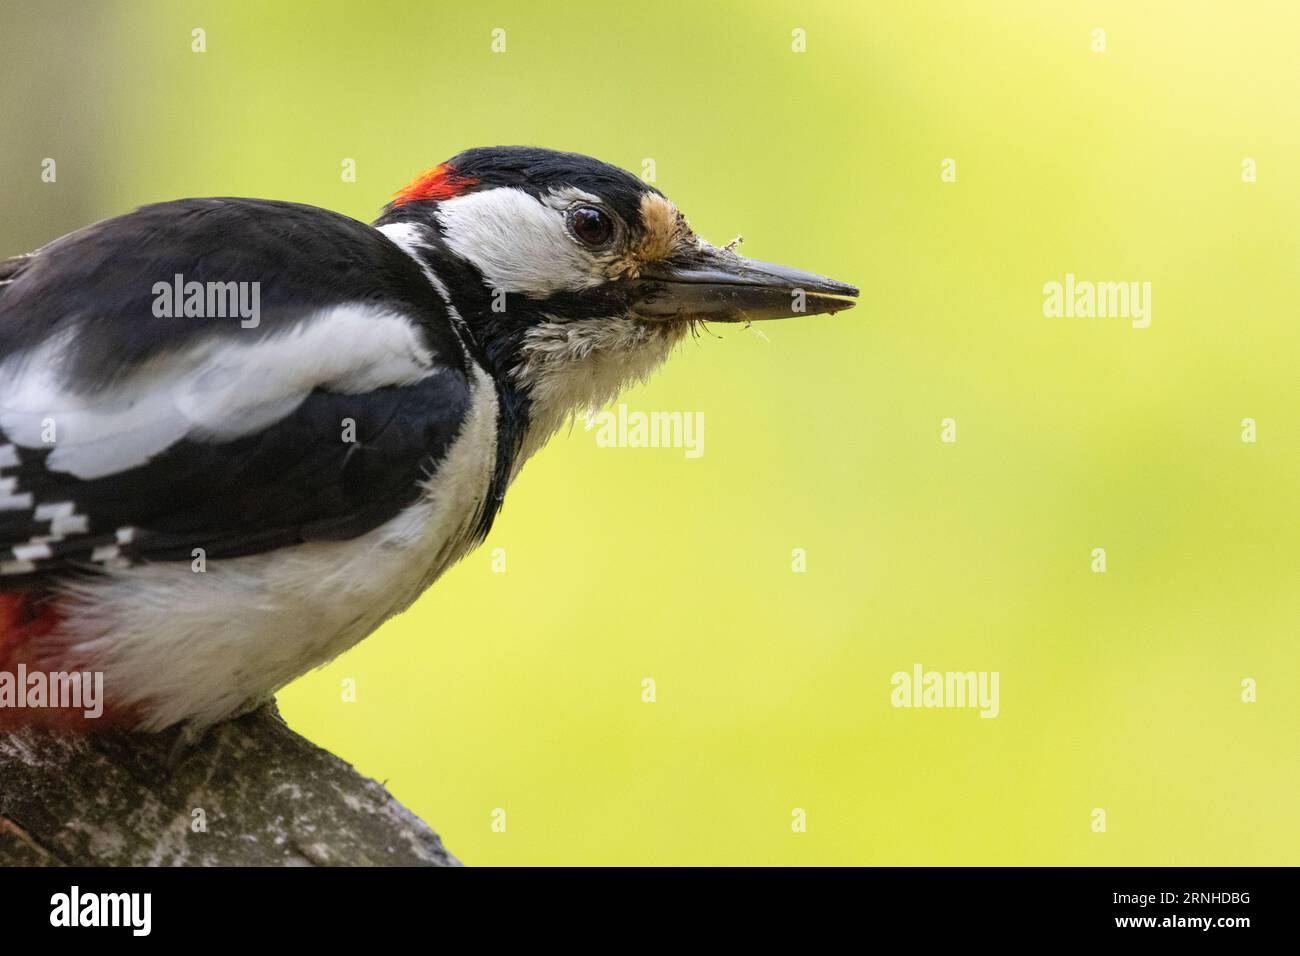 A woodpecker in Helsinki, Finland Stock Photo